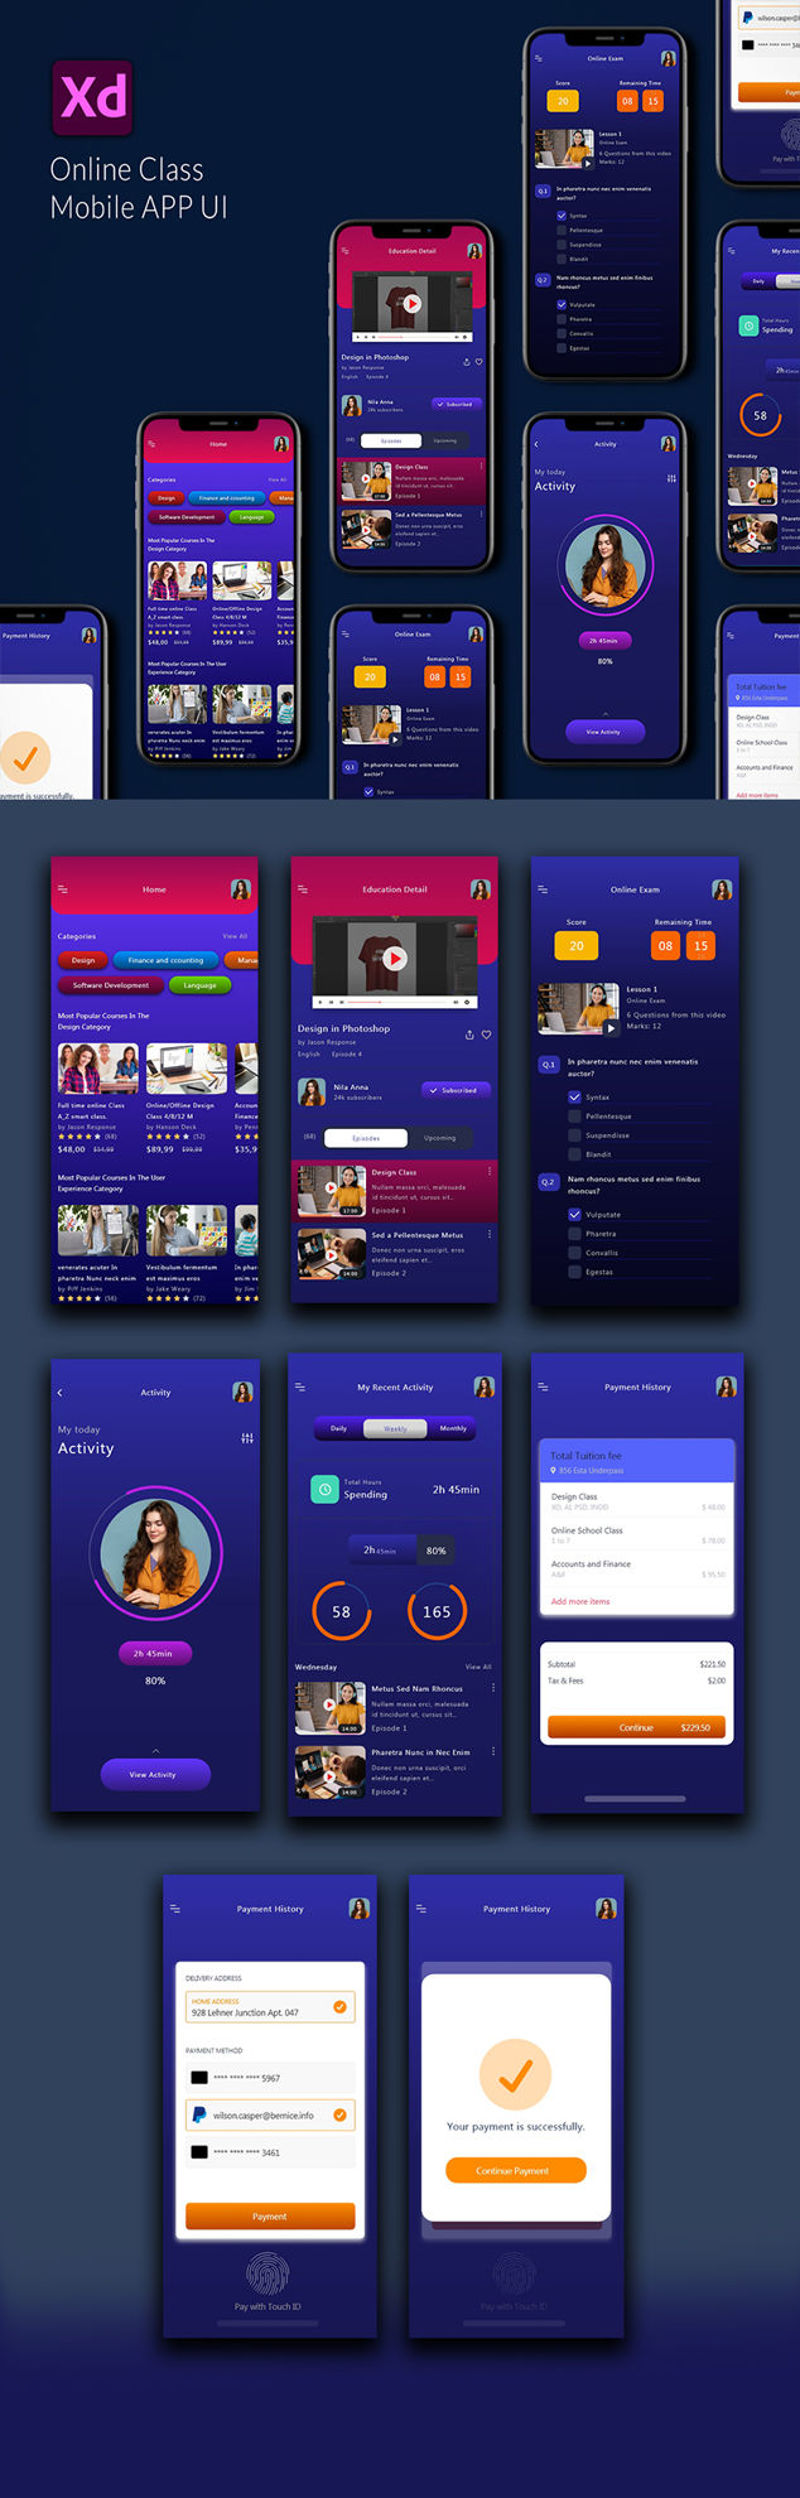 Interface utilisateur de l'application mobile de classe en ligne